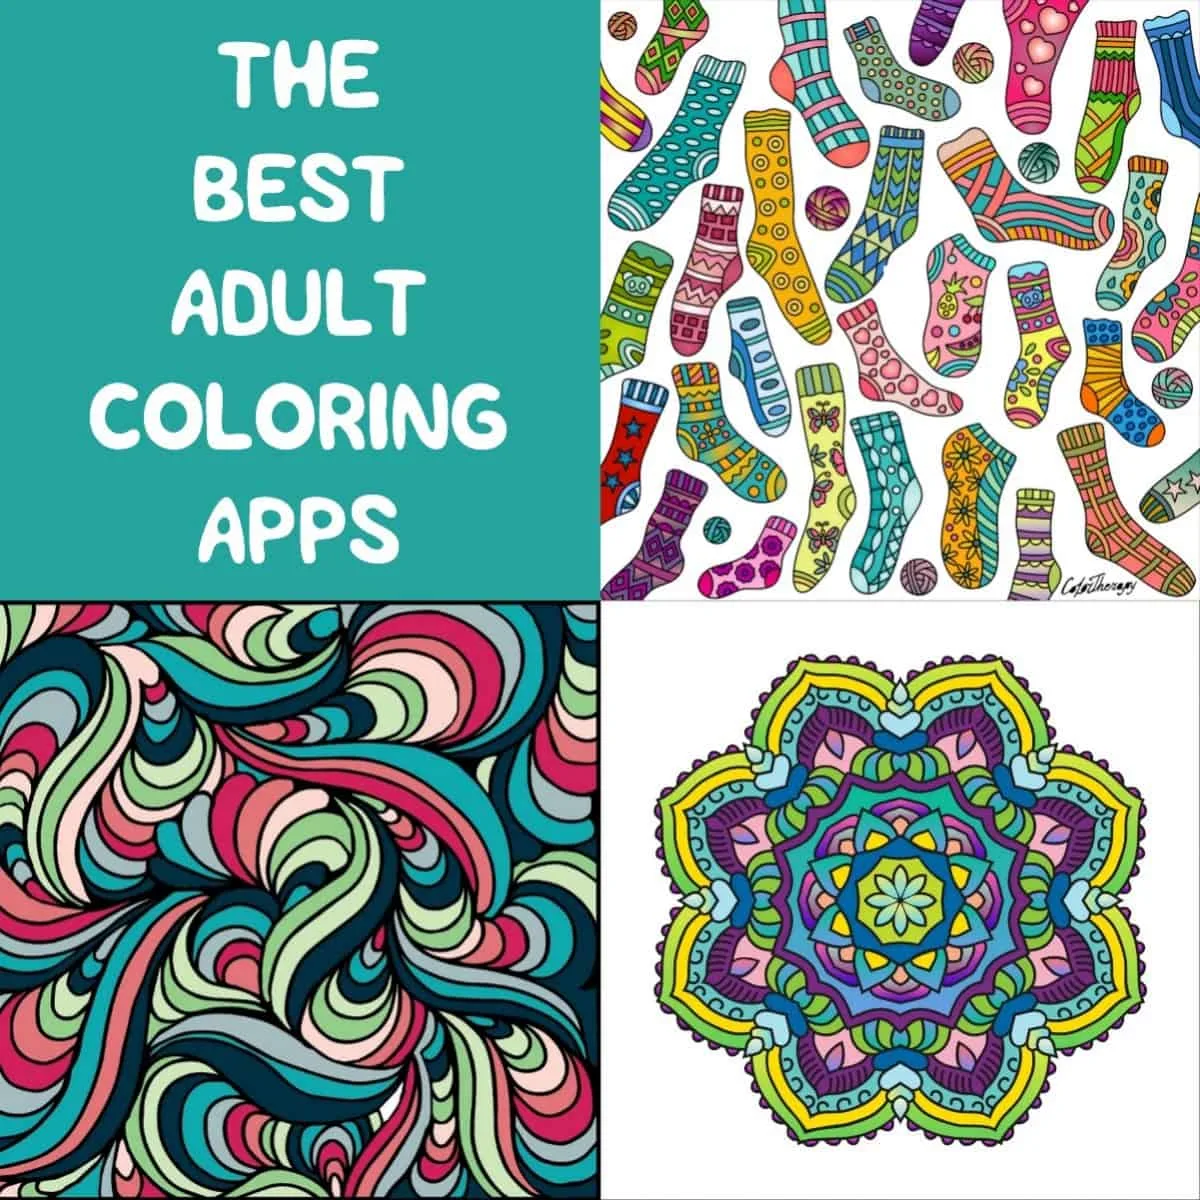 https://diycandy.b-cdn.net/wp-content/uploads/2016/07/Get-the-best-adult-coloring-apps-e1469650632707.jpg.webp